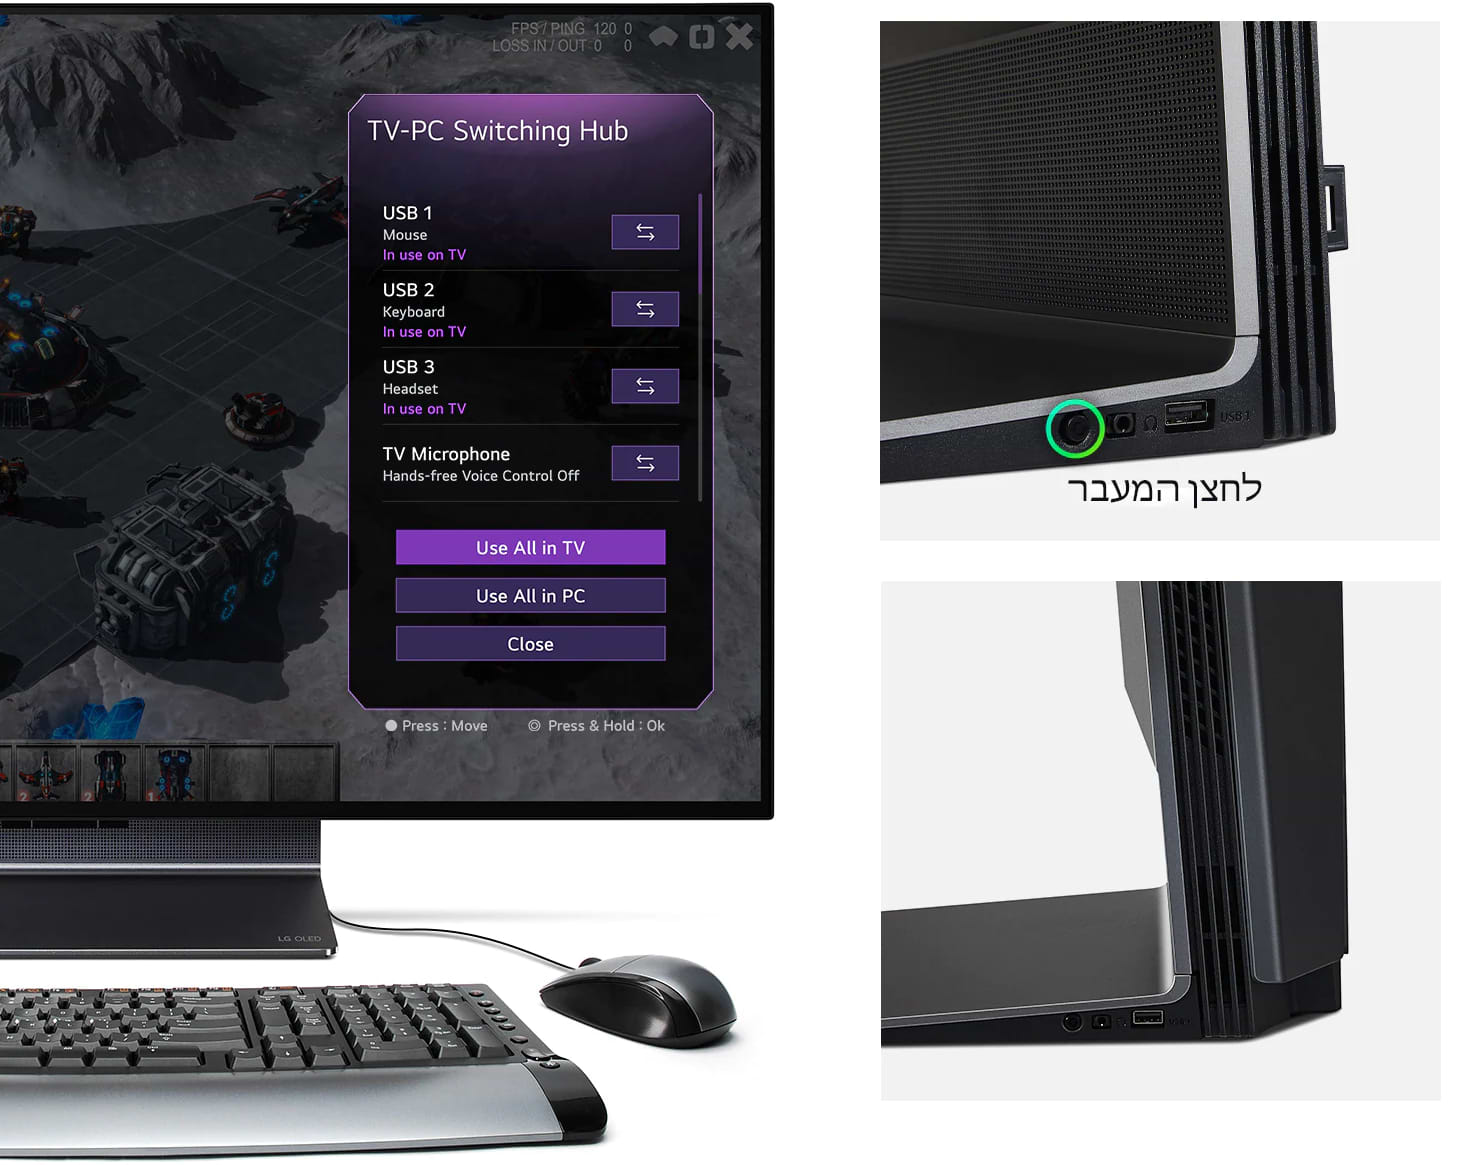 טלוויזיה / מסך מחשב גיימינג גמיש 42'' LG OLED Flex 42LX3Q6LA G-Sync Smart 4K UHD HDR 1ms 120Hz - צבע שחור שלוש שנות אחריות ע"י היבואן הרשמי